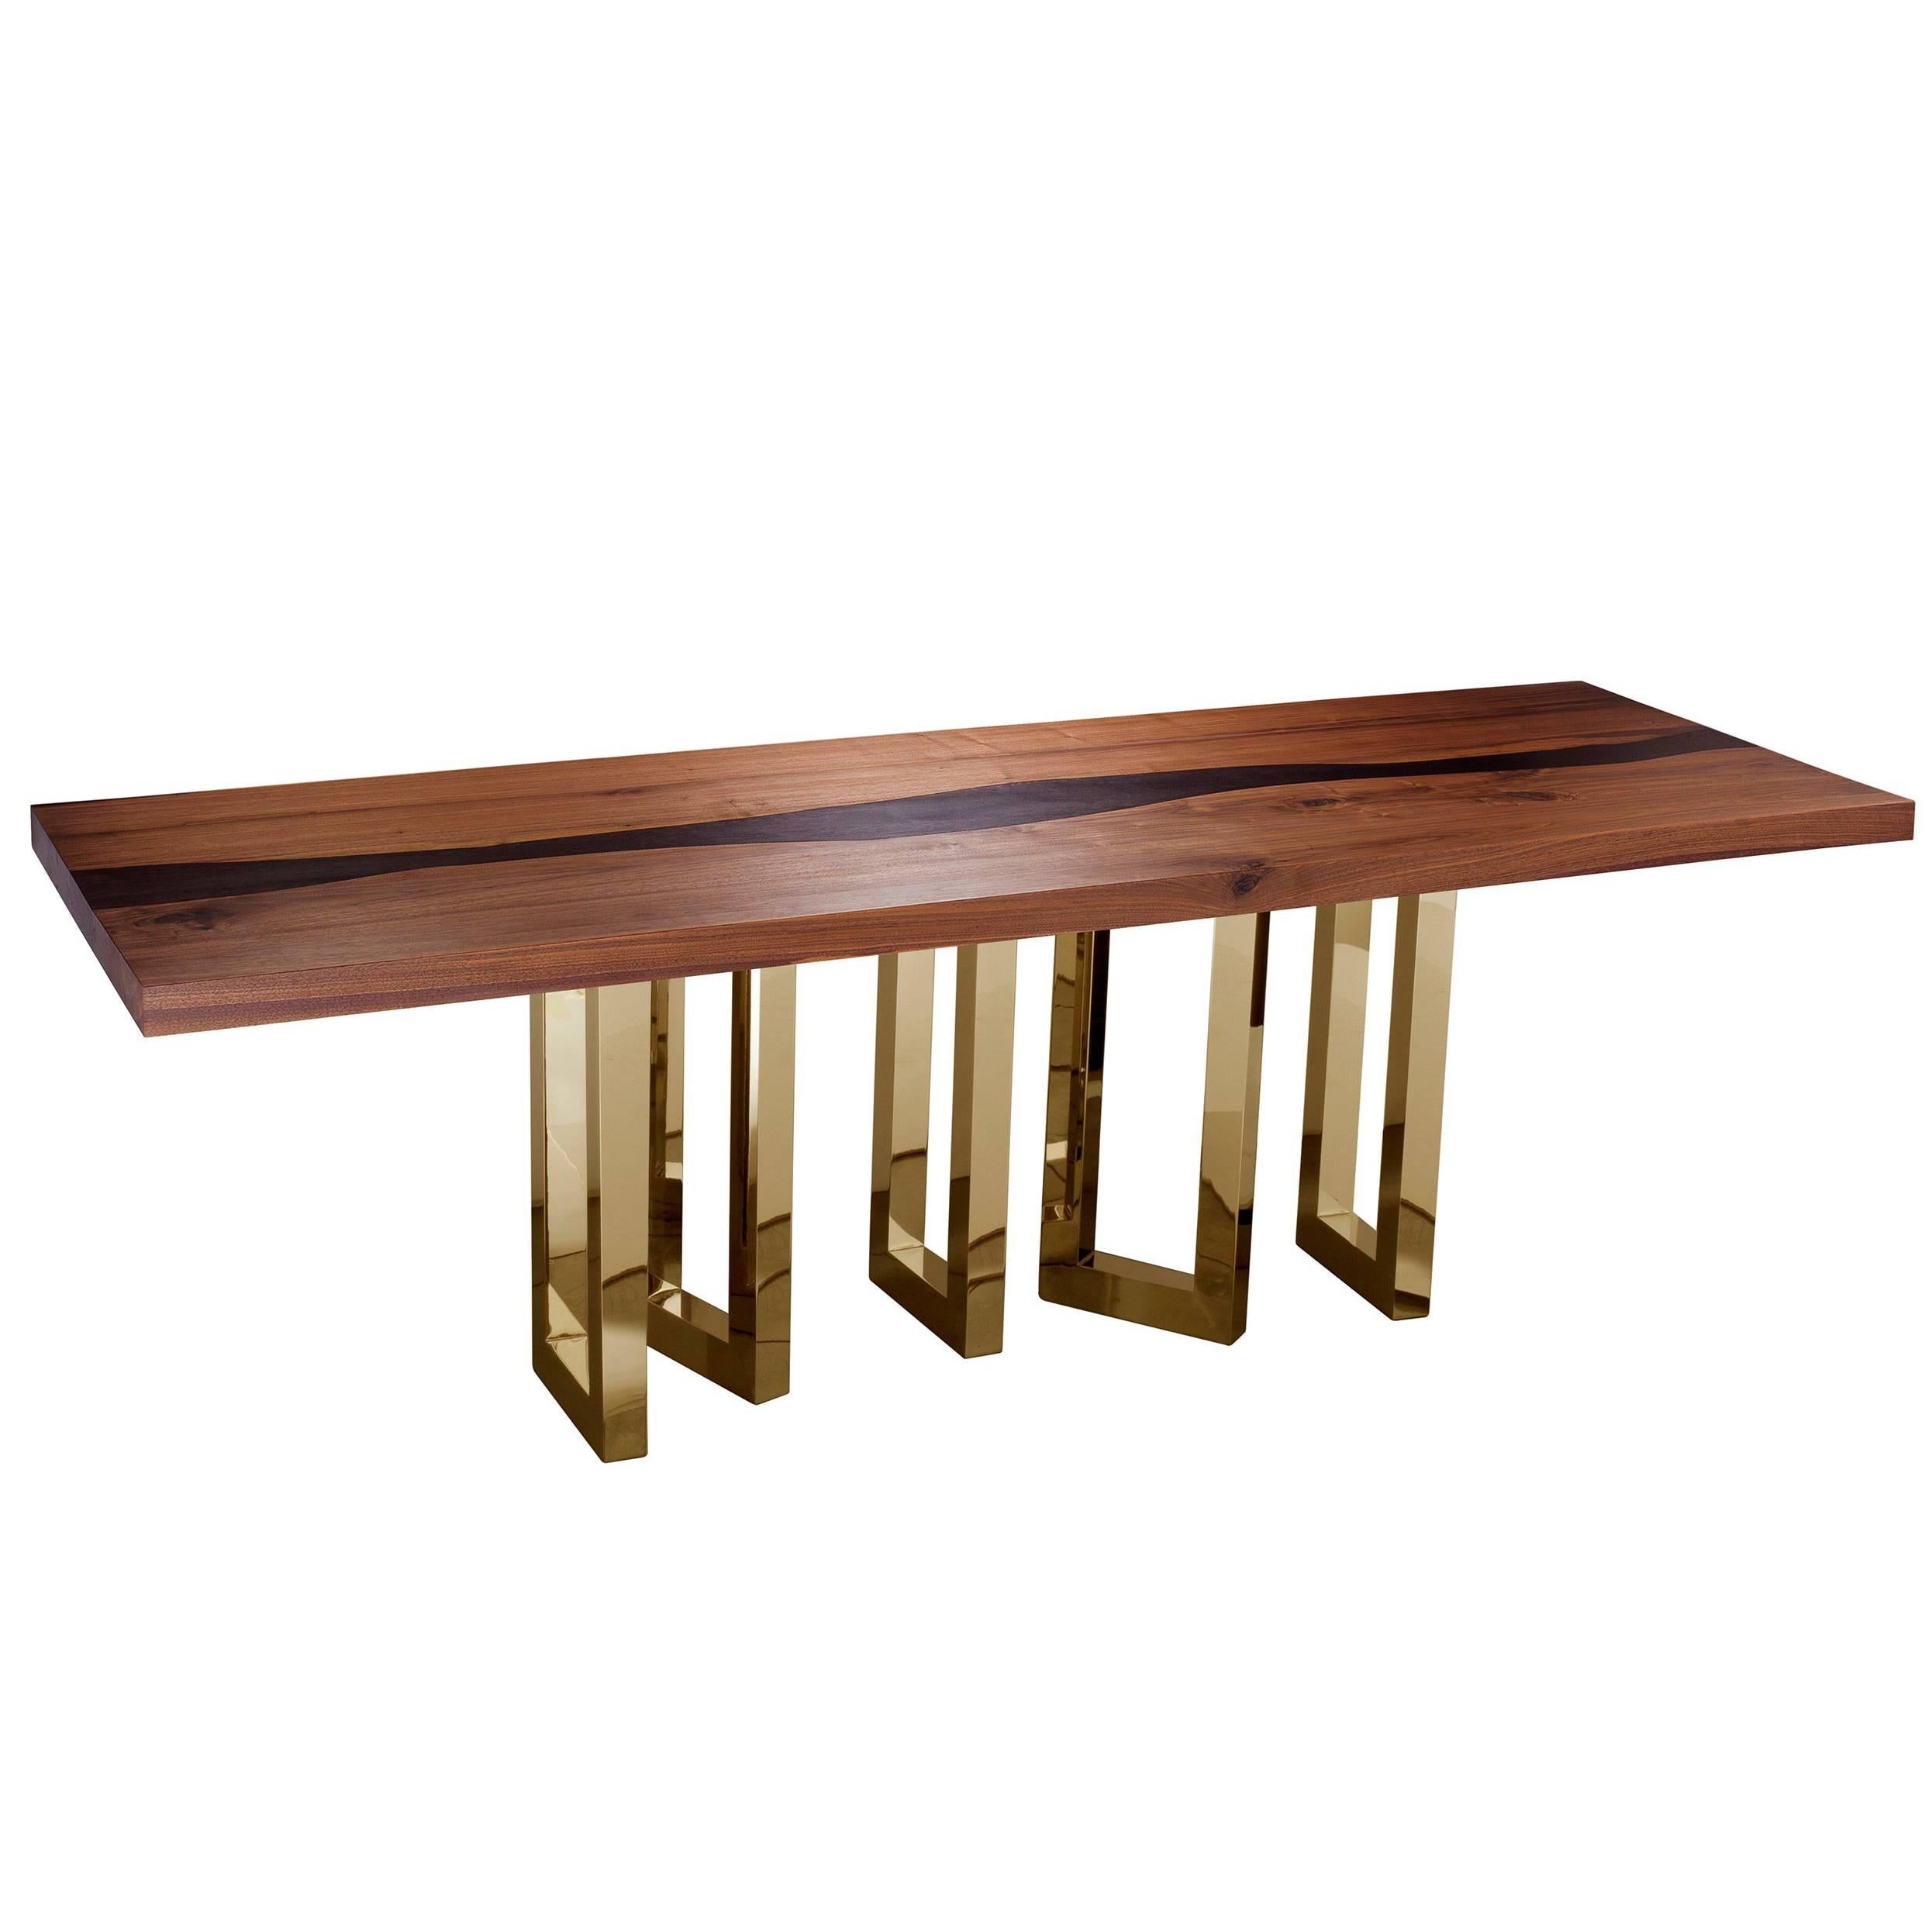 „Il Pezzo 6“, langer Tisch, 260 cm/102.4 cm, aus massivem Nussbaum und Wengé – goldener Sockel